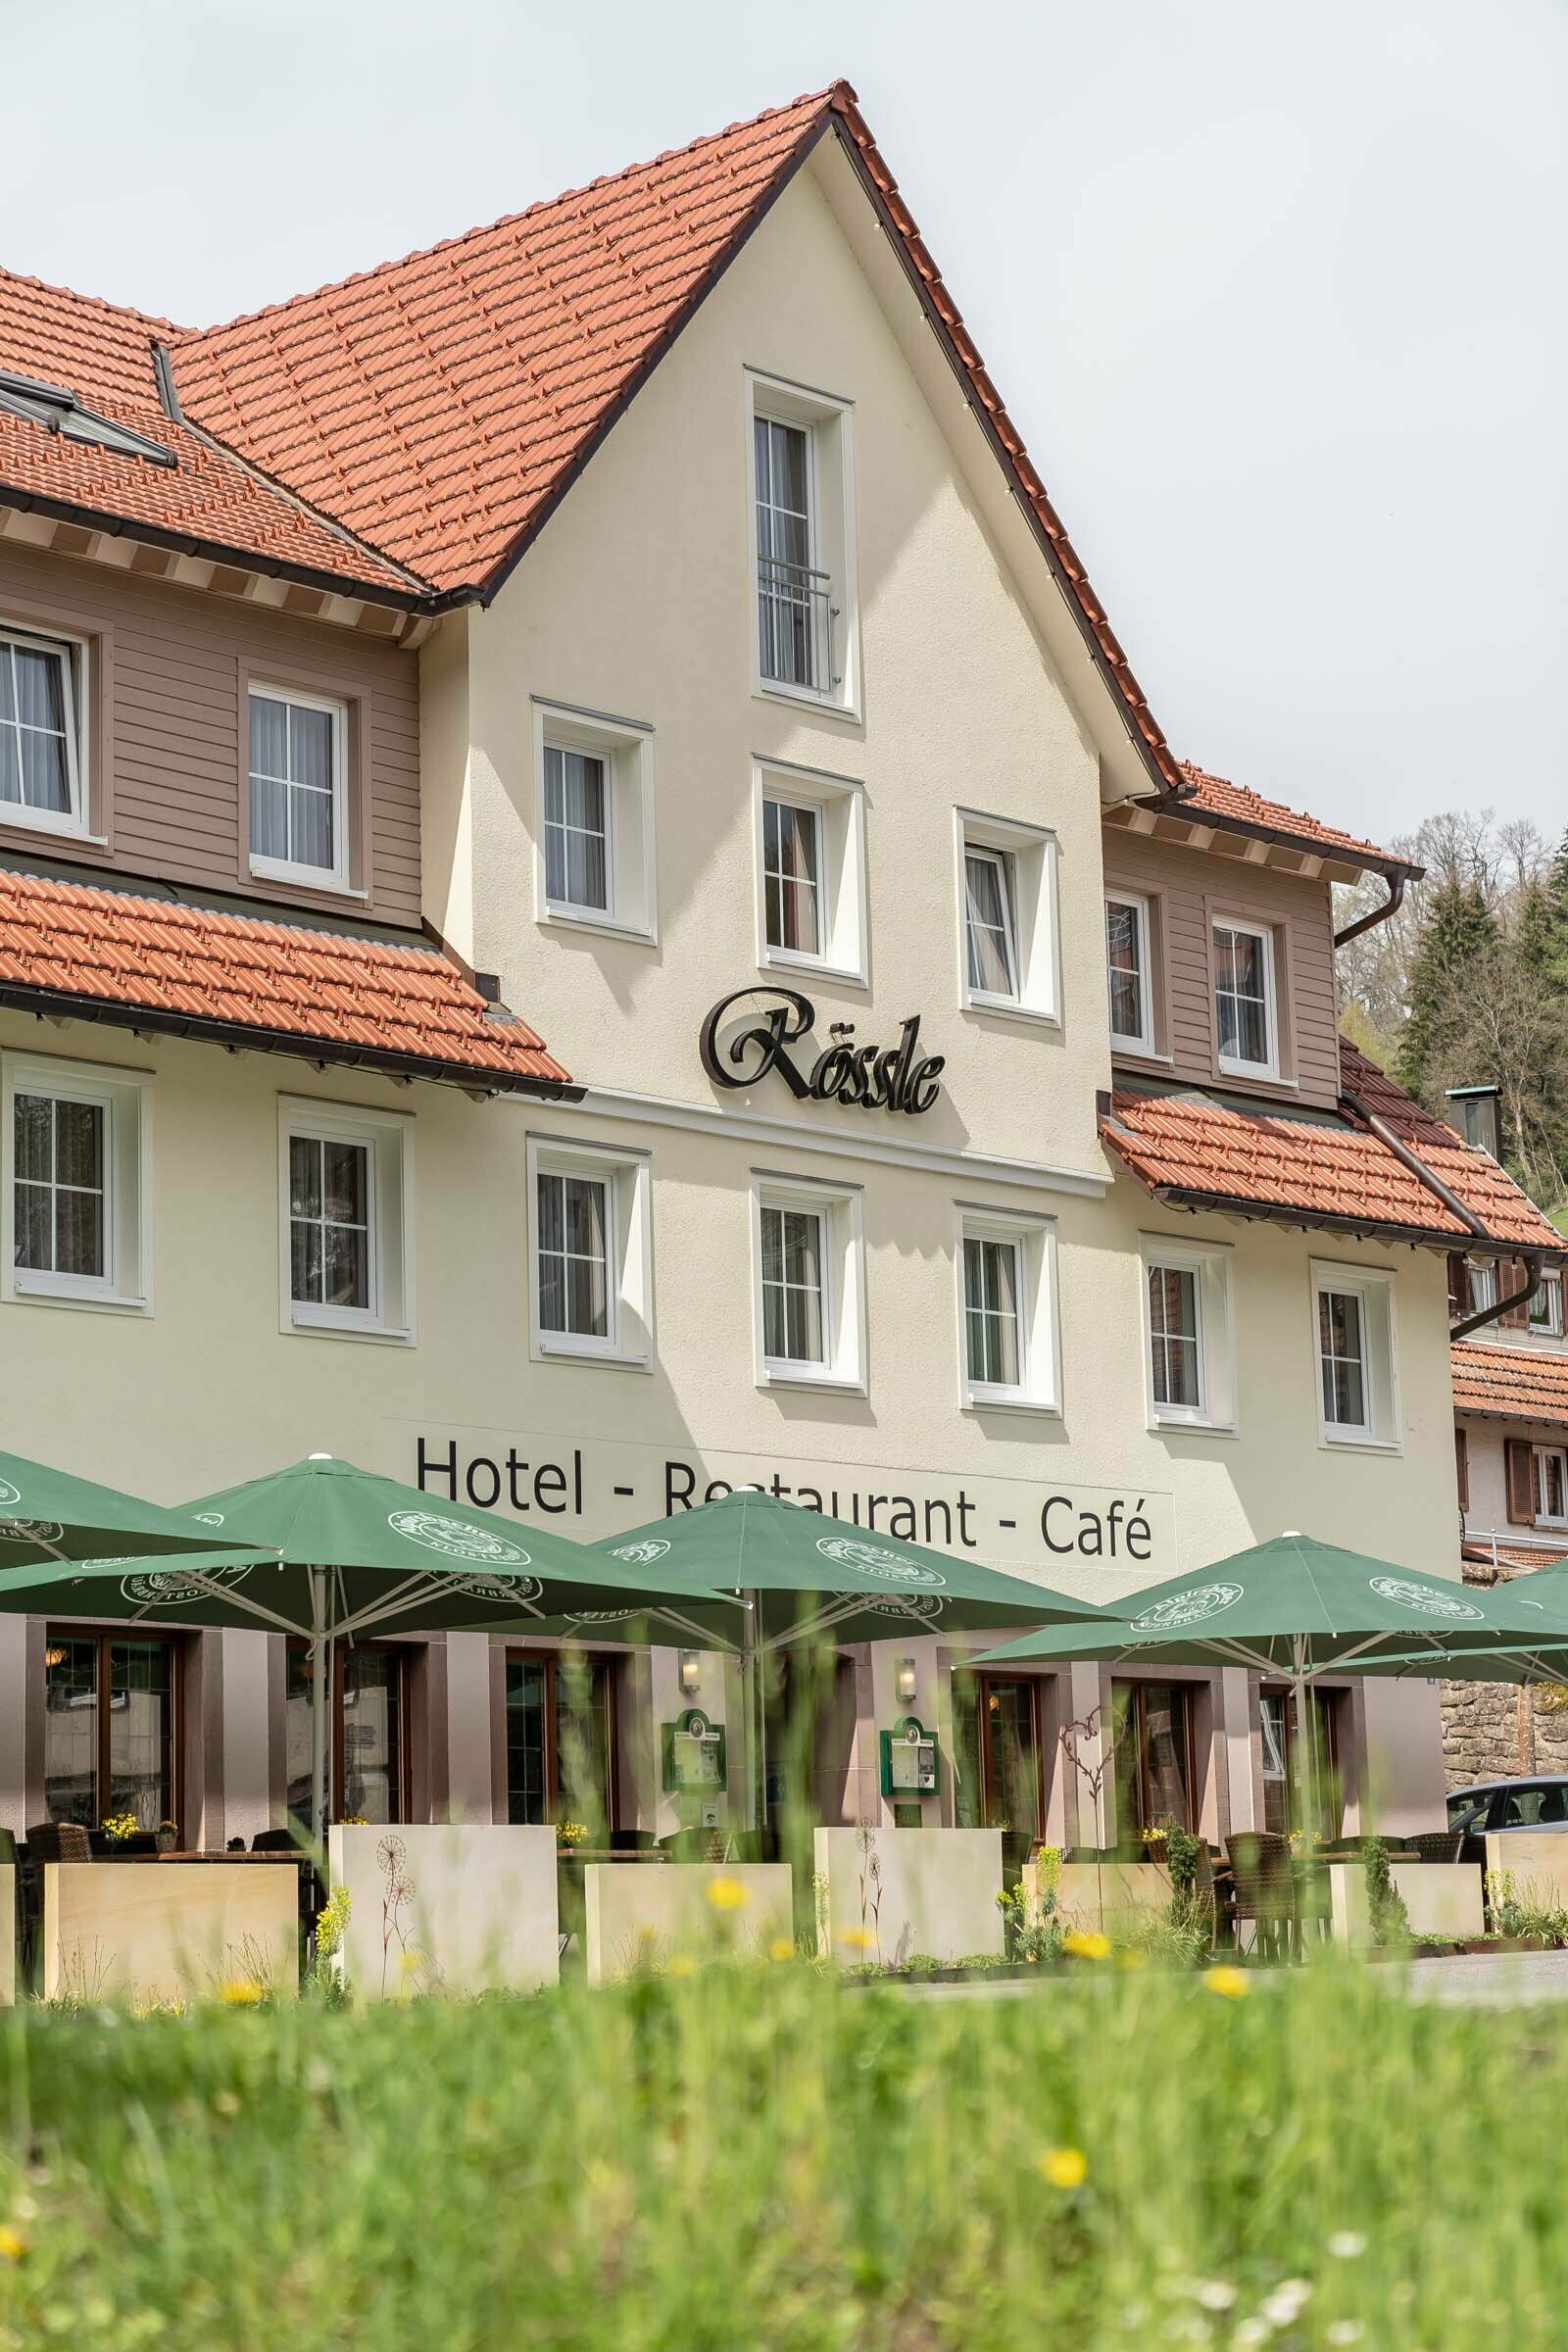 4 Tage Natur pur im schönen Schwarzwald – Hotel Rössle Berneck  in Altensteig, Baden-Württemberg inkl. Halbpension